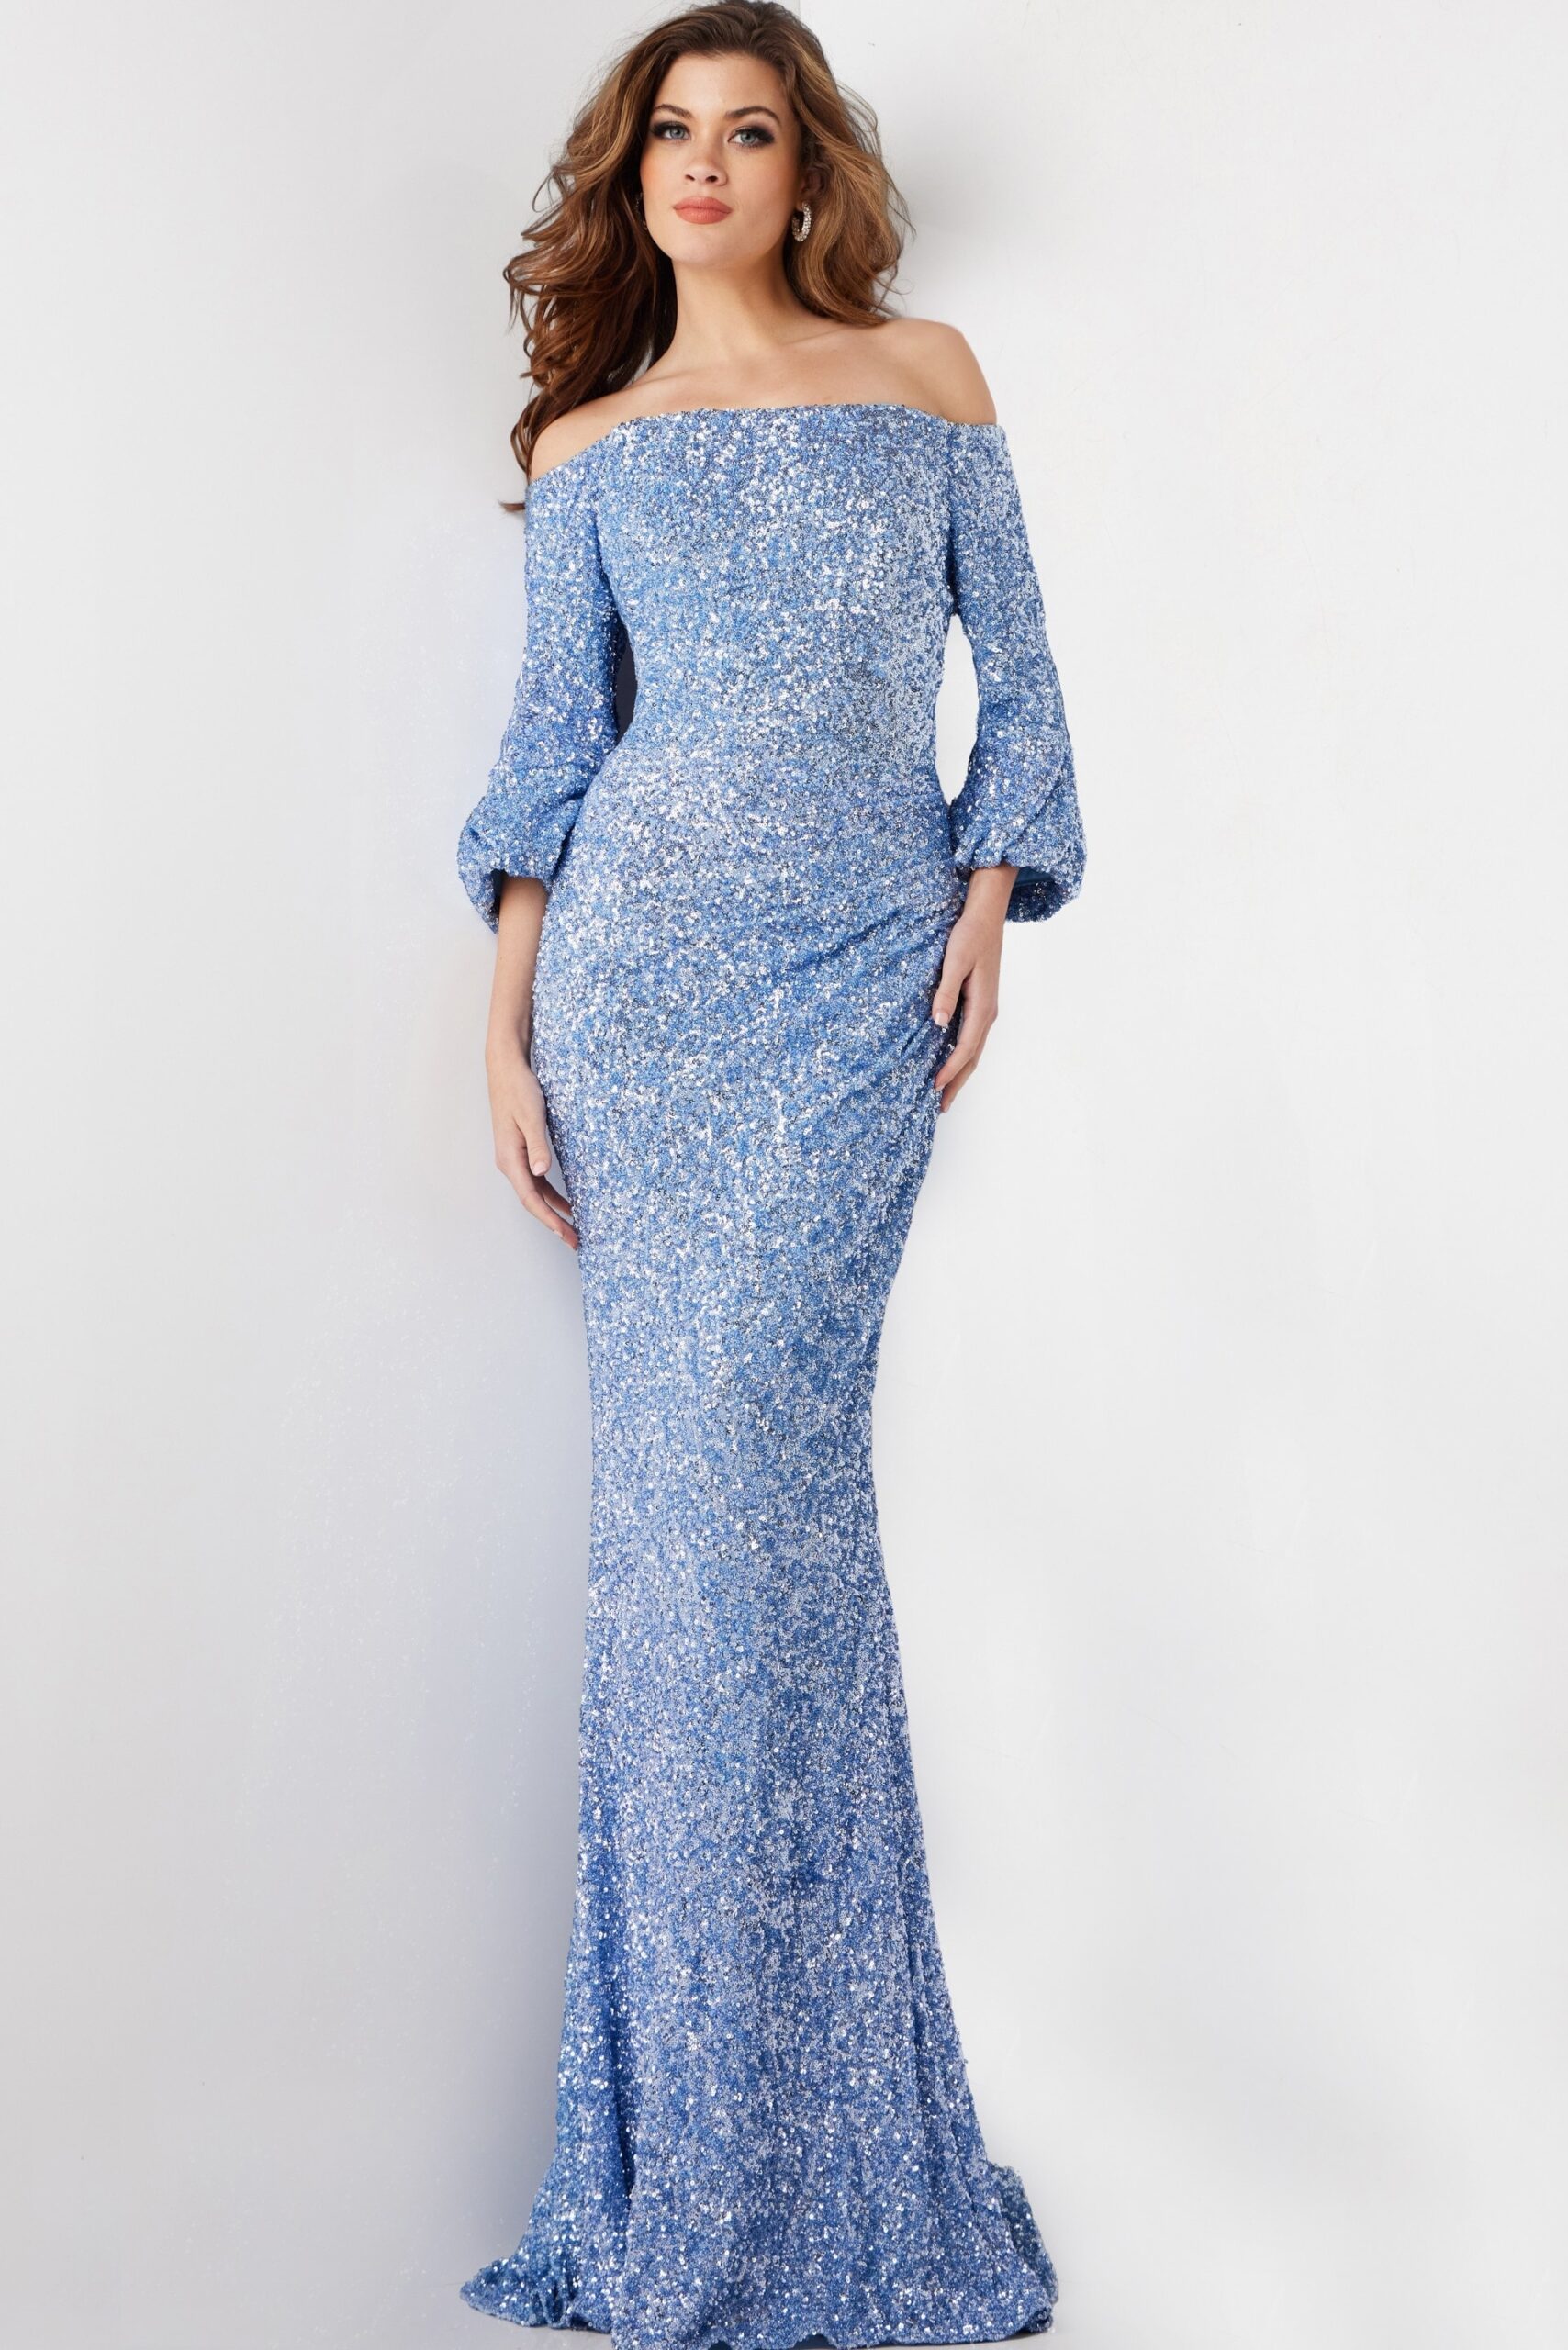 Blue Off the Shoulder Sequin Formal Dress 25949